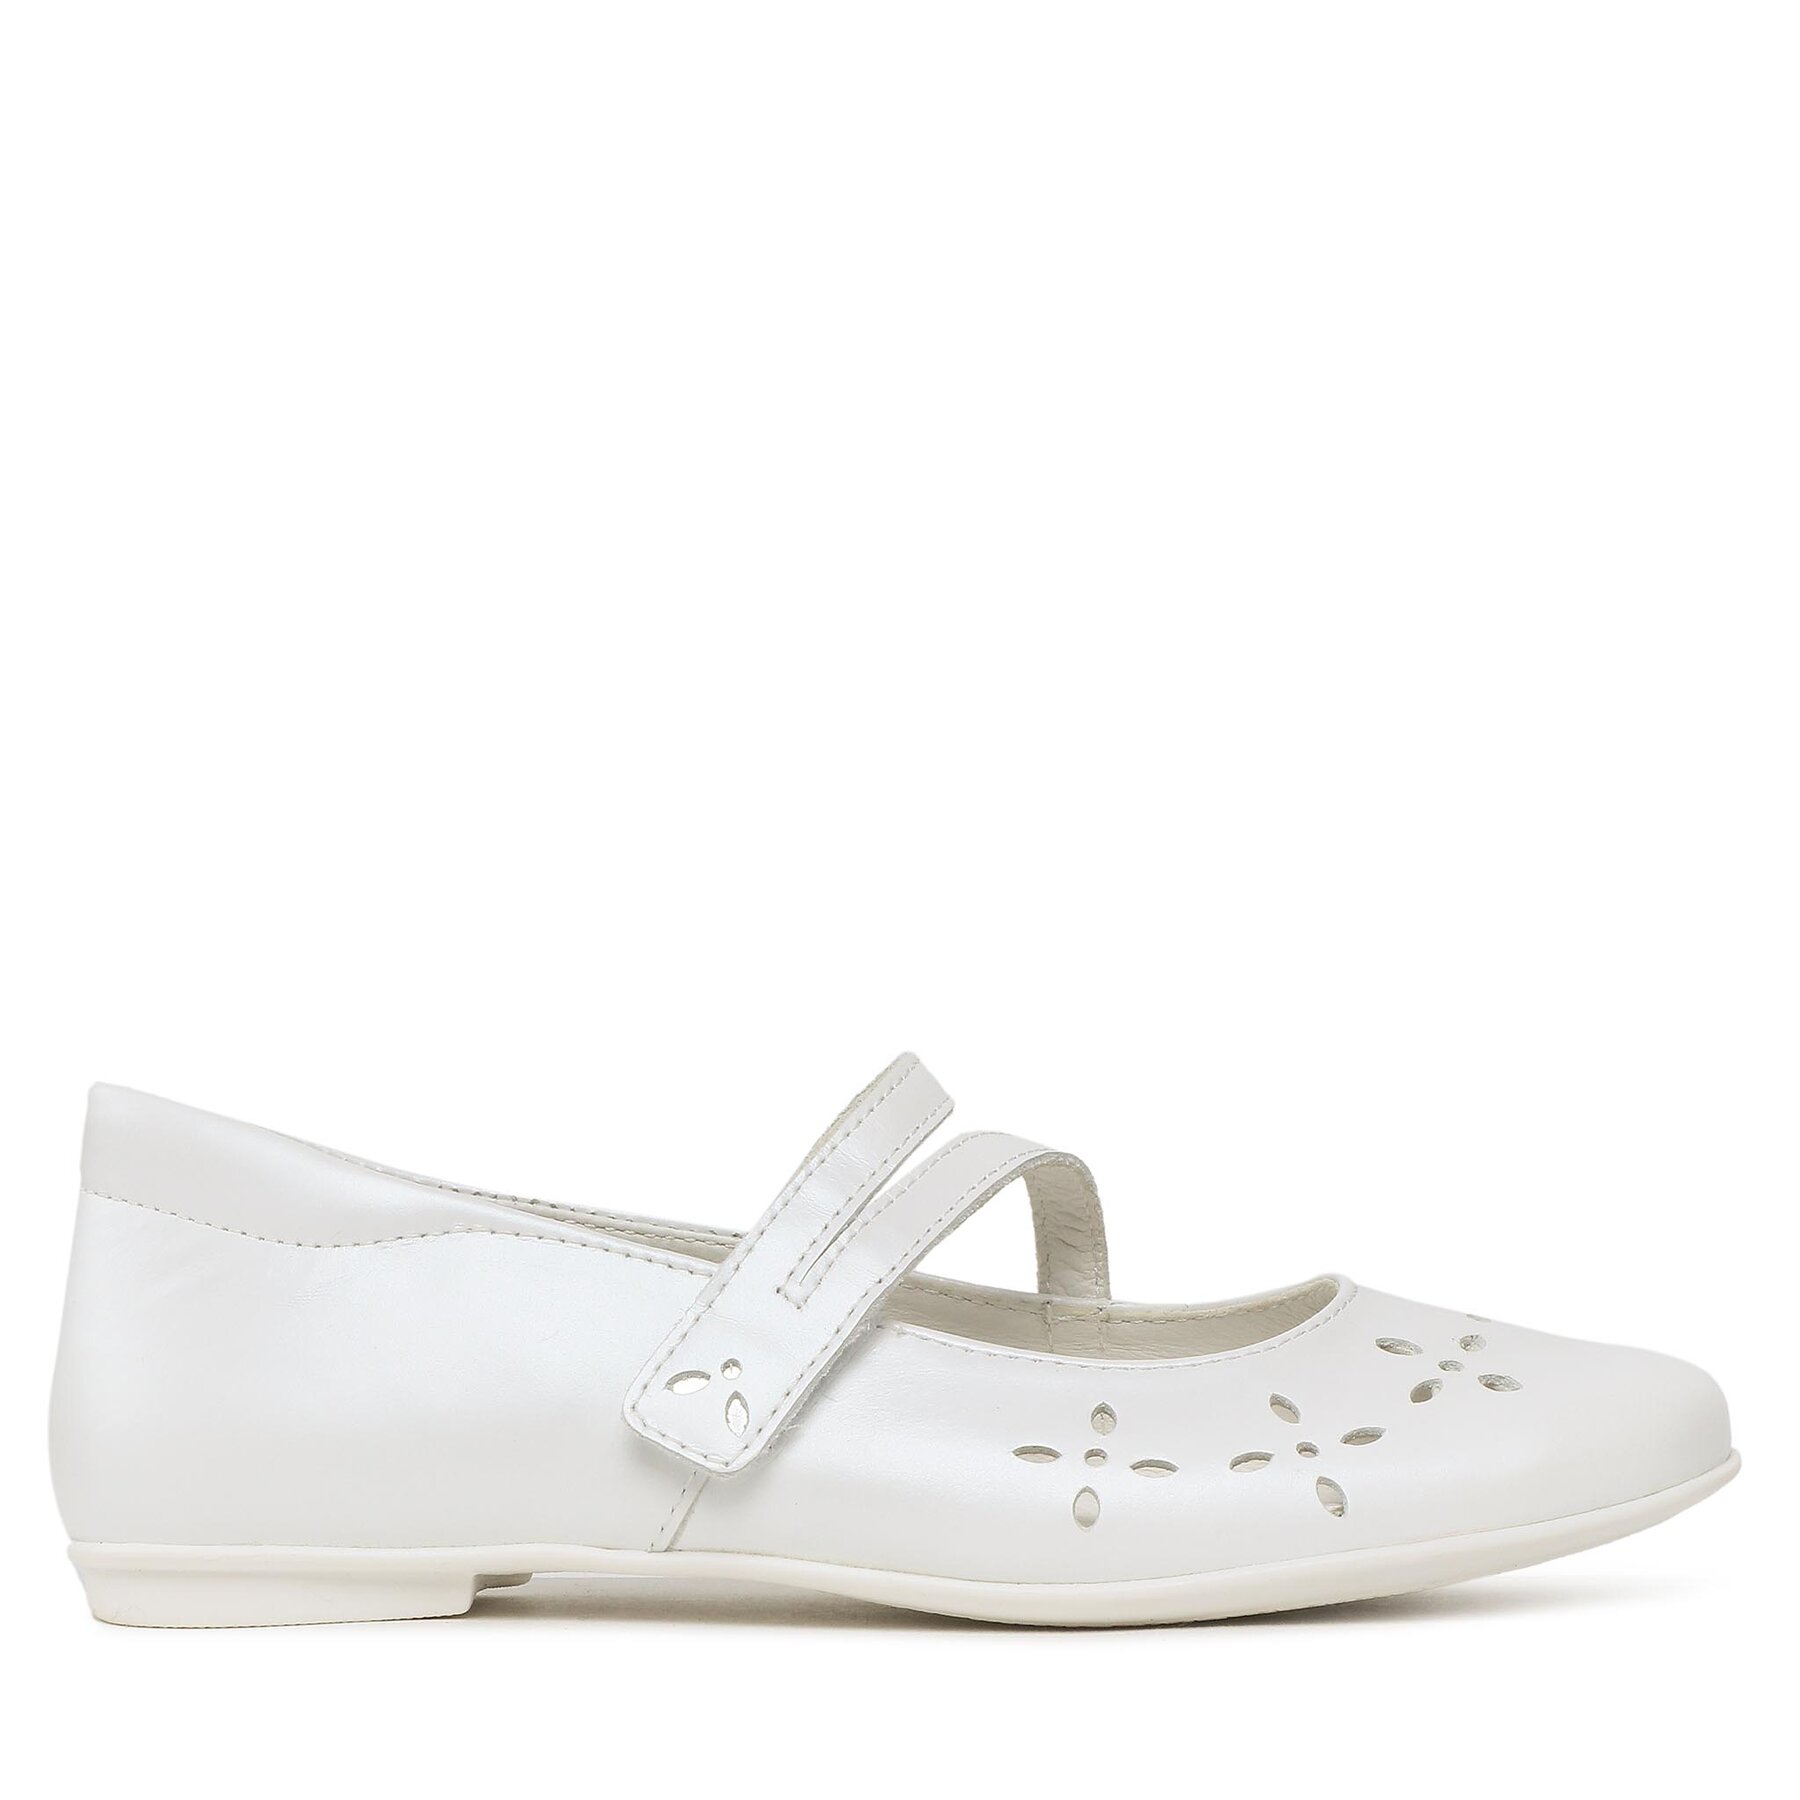 Cipele Primigi 3920411 D Pearly White